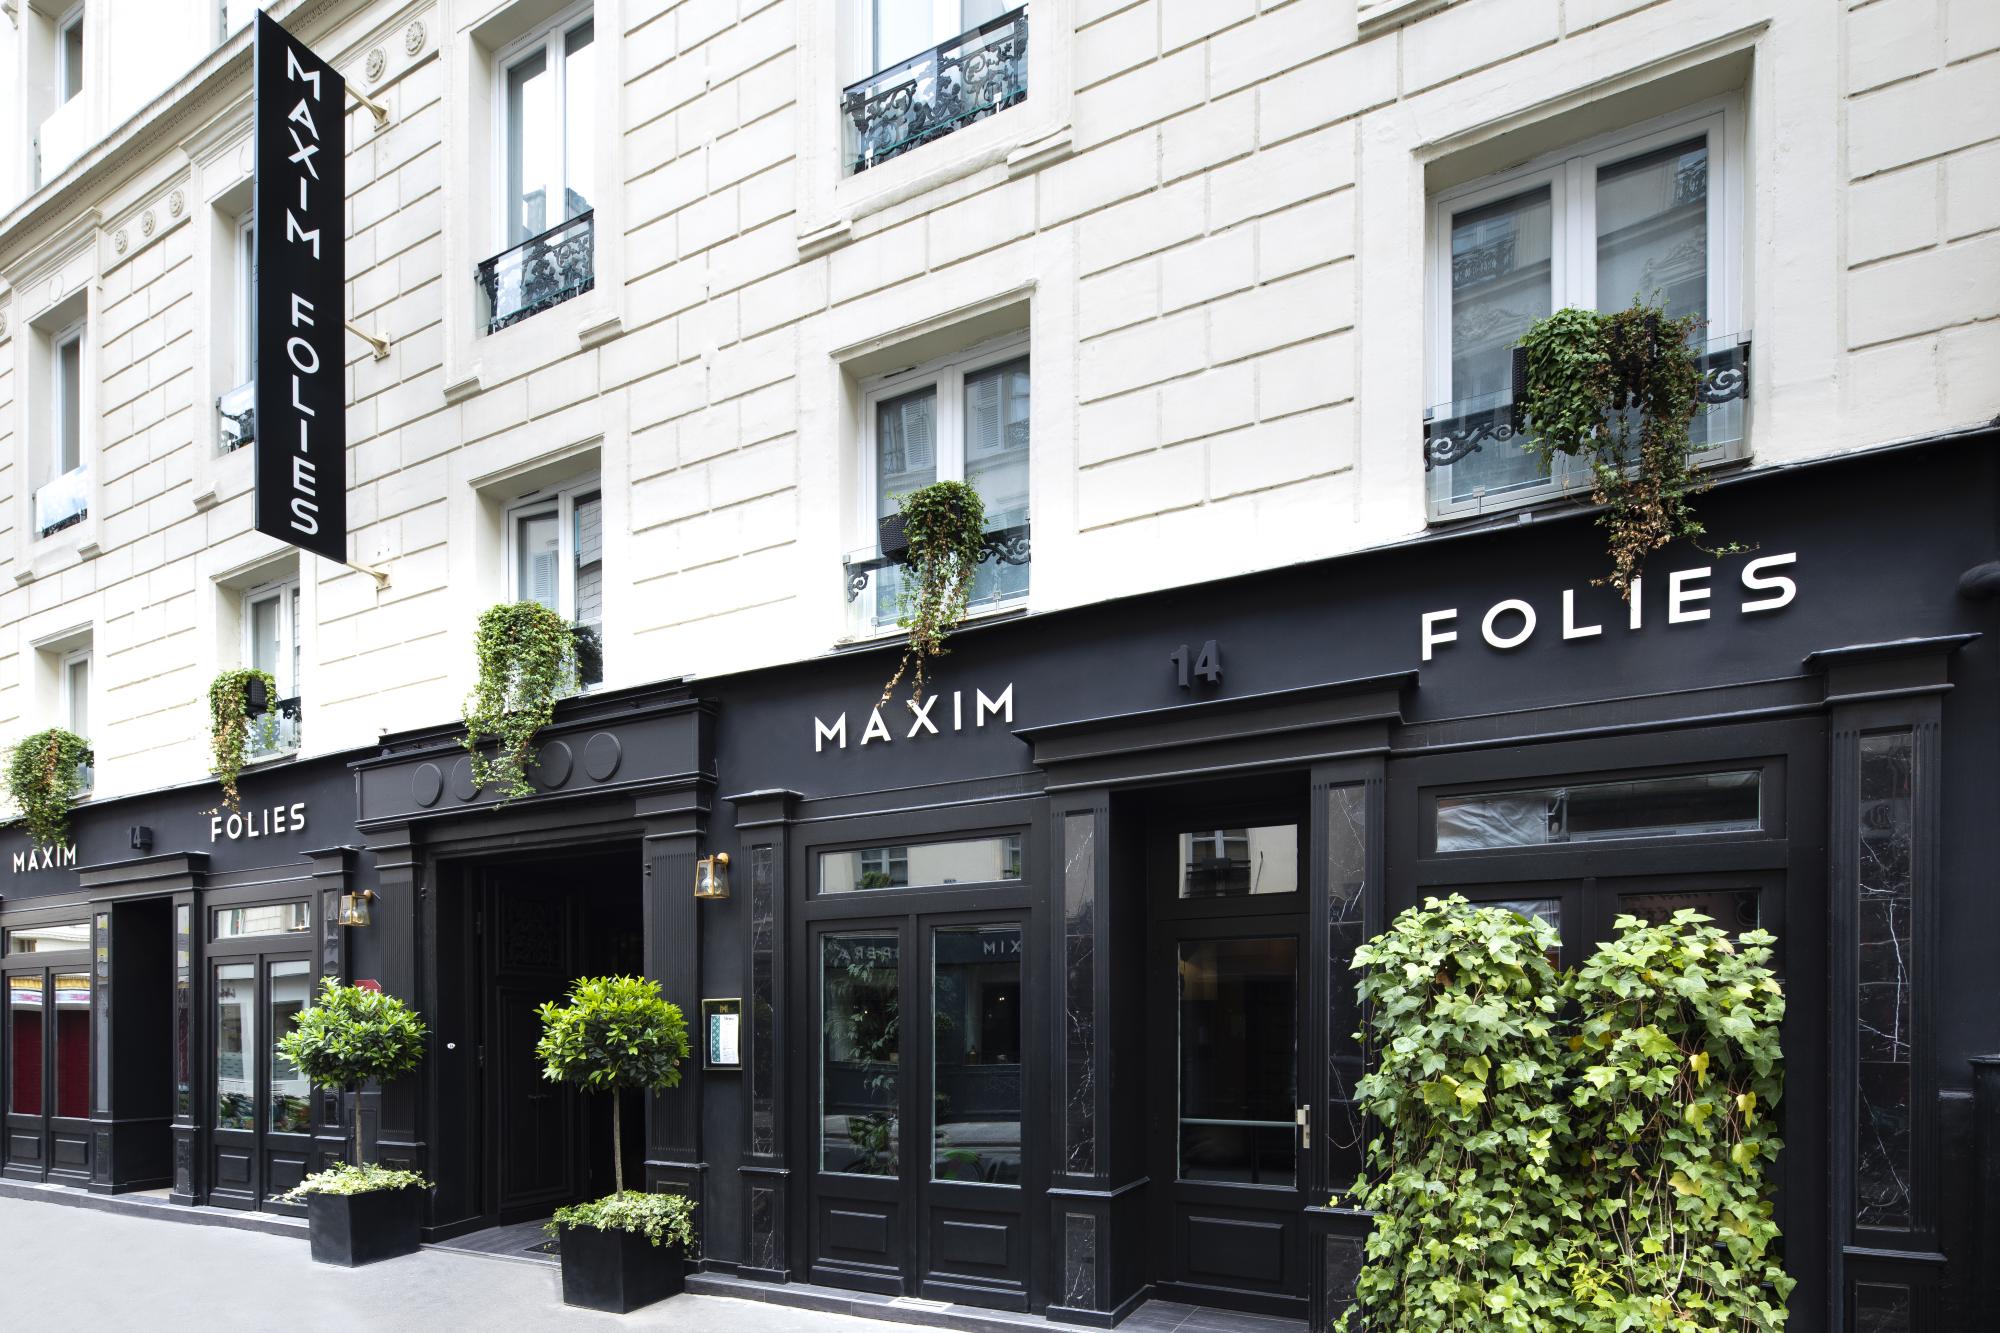 Hotel Maxim Folies Facade